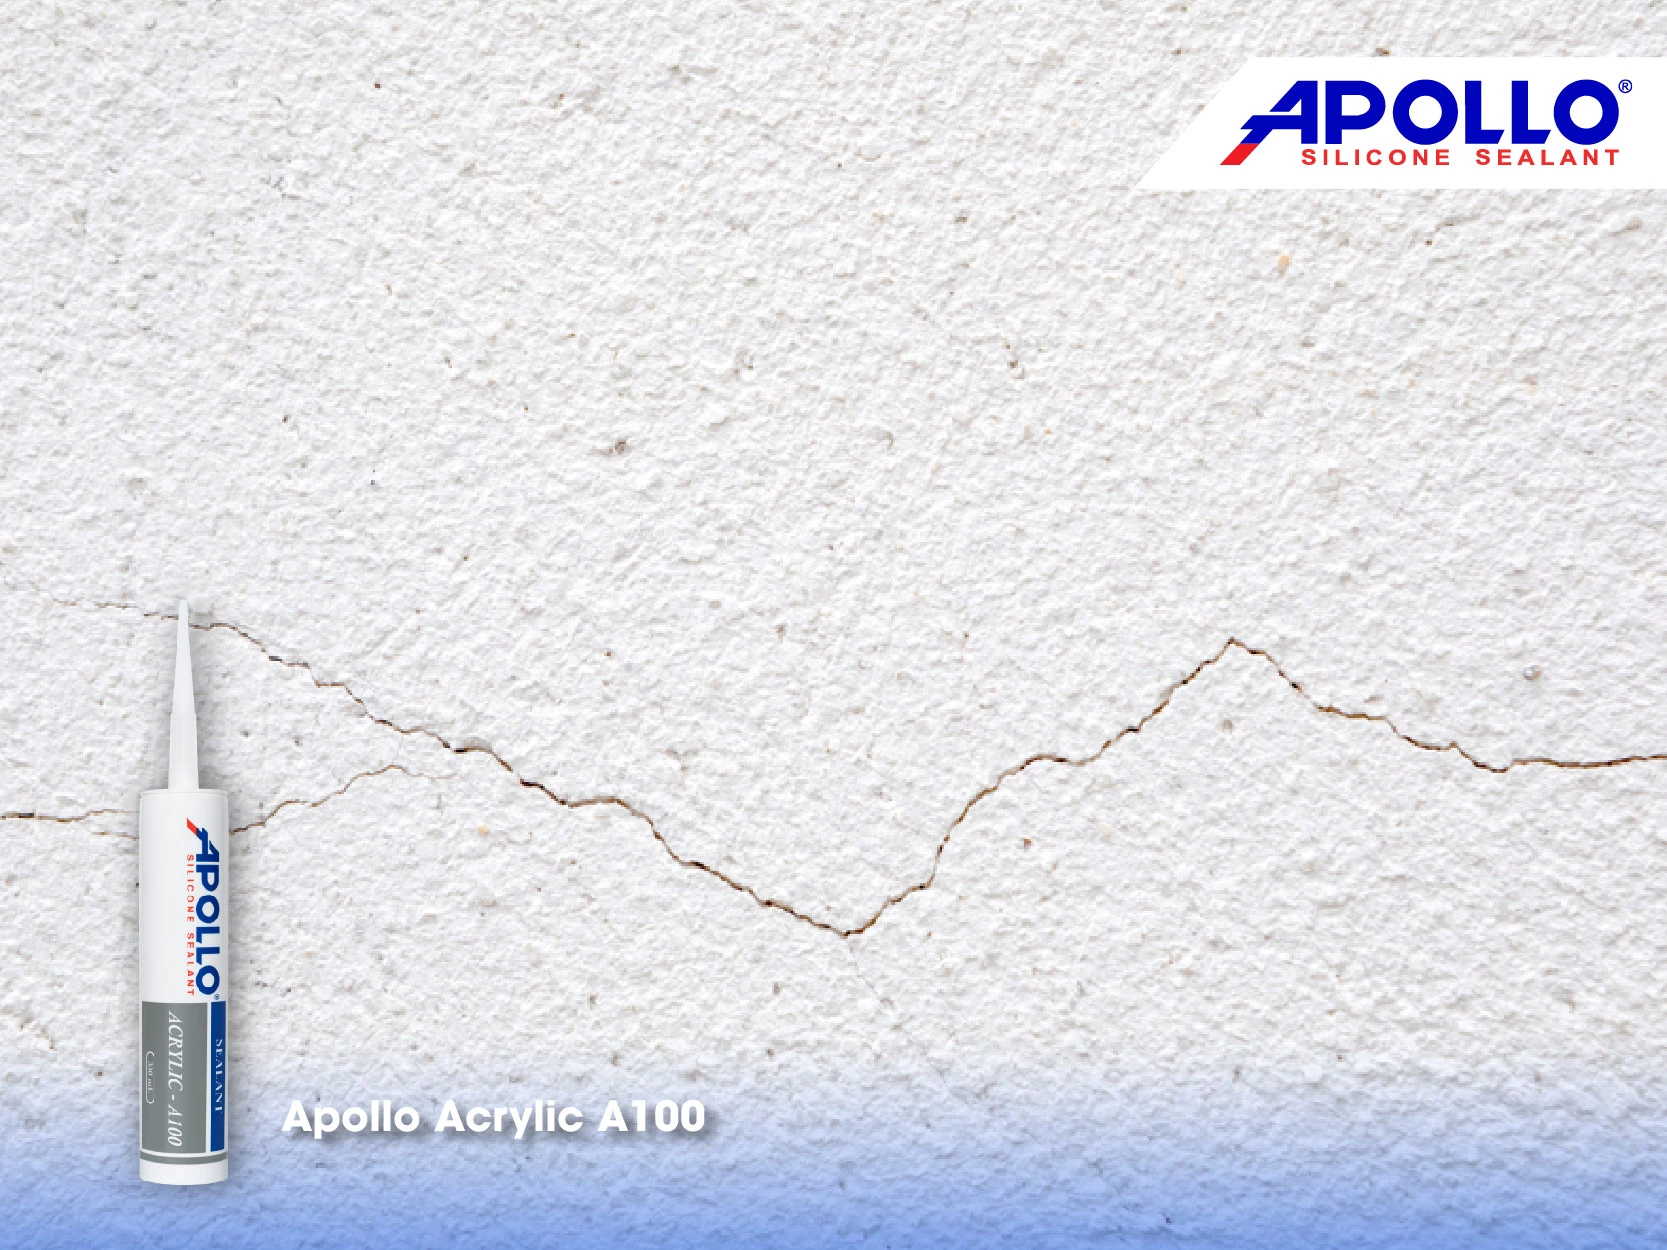 Để trám trét các khe nứt trên tường thì bạn nên sử dụng Apollo Acrylic A100